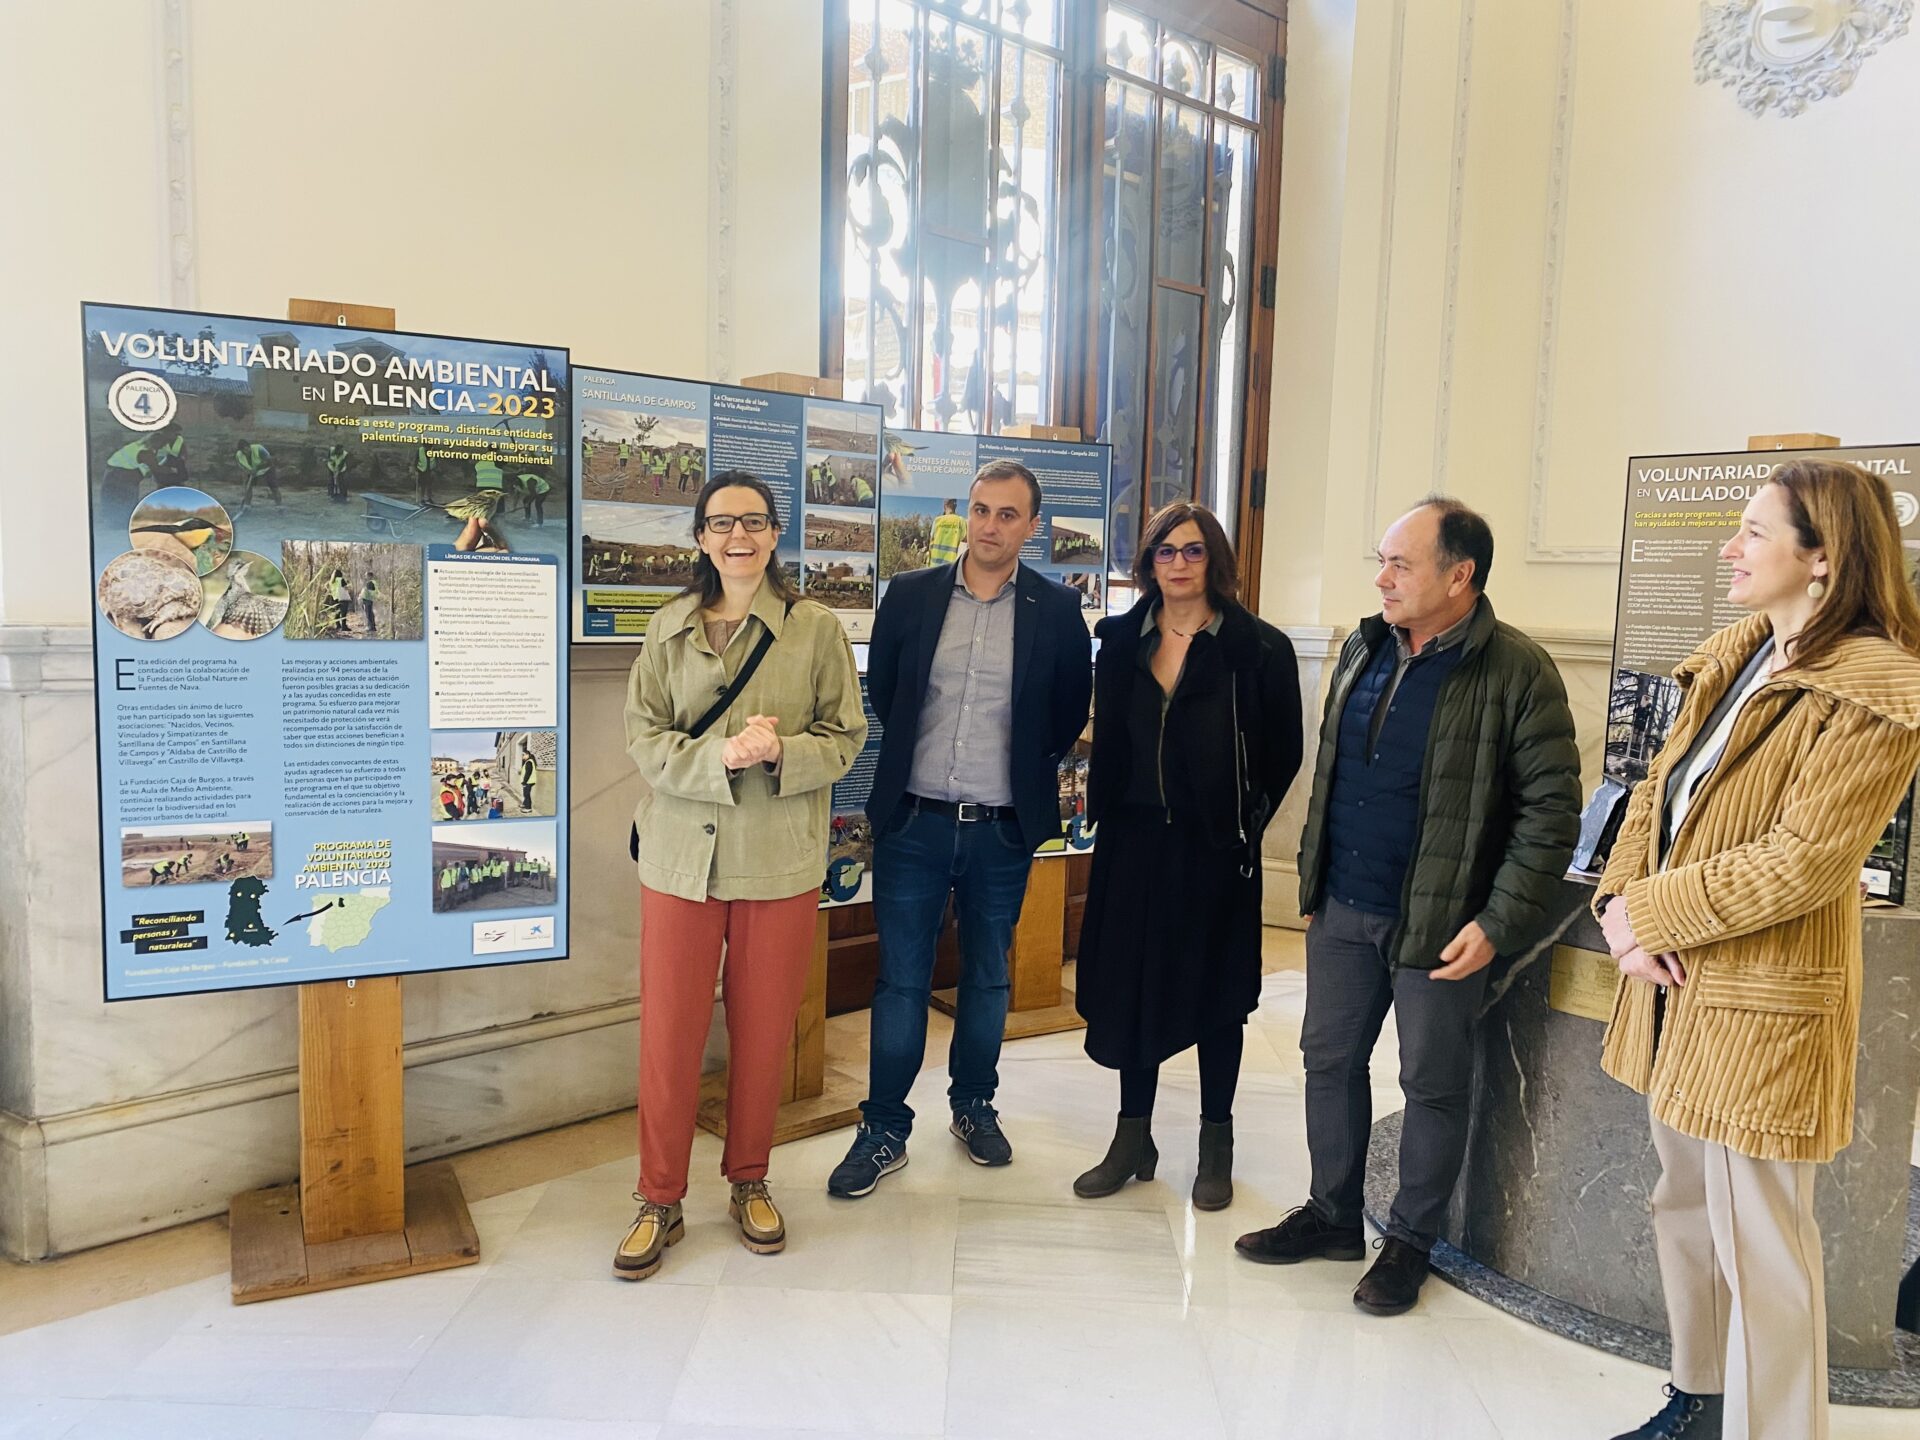 El vestíbulo de la Diputación estrena una exposición sobre voluntariado ambiental – Palencia en la Red